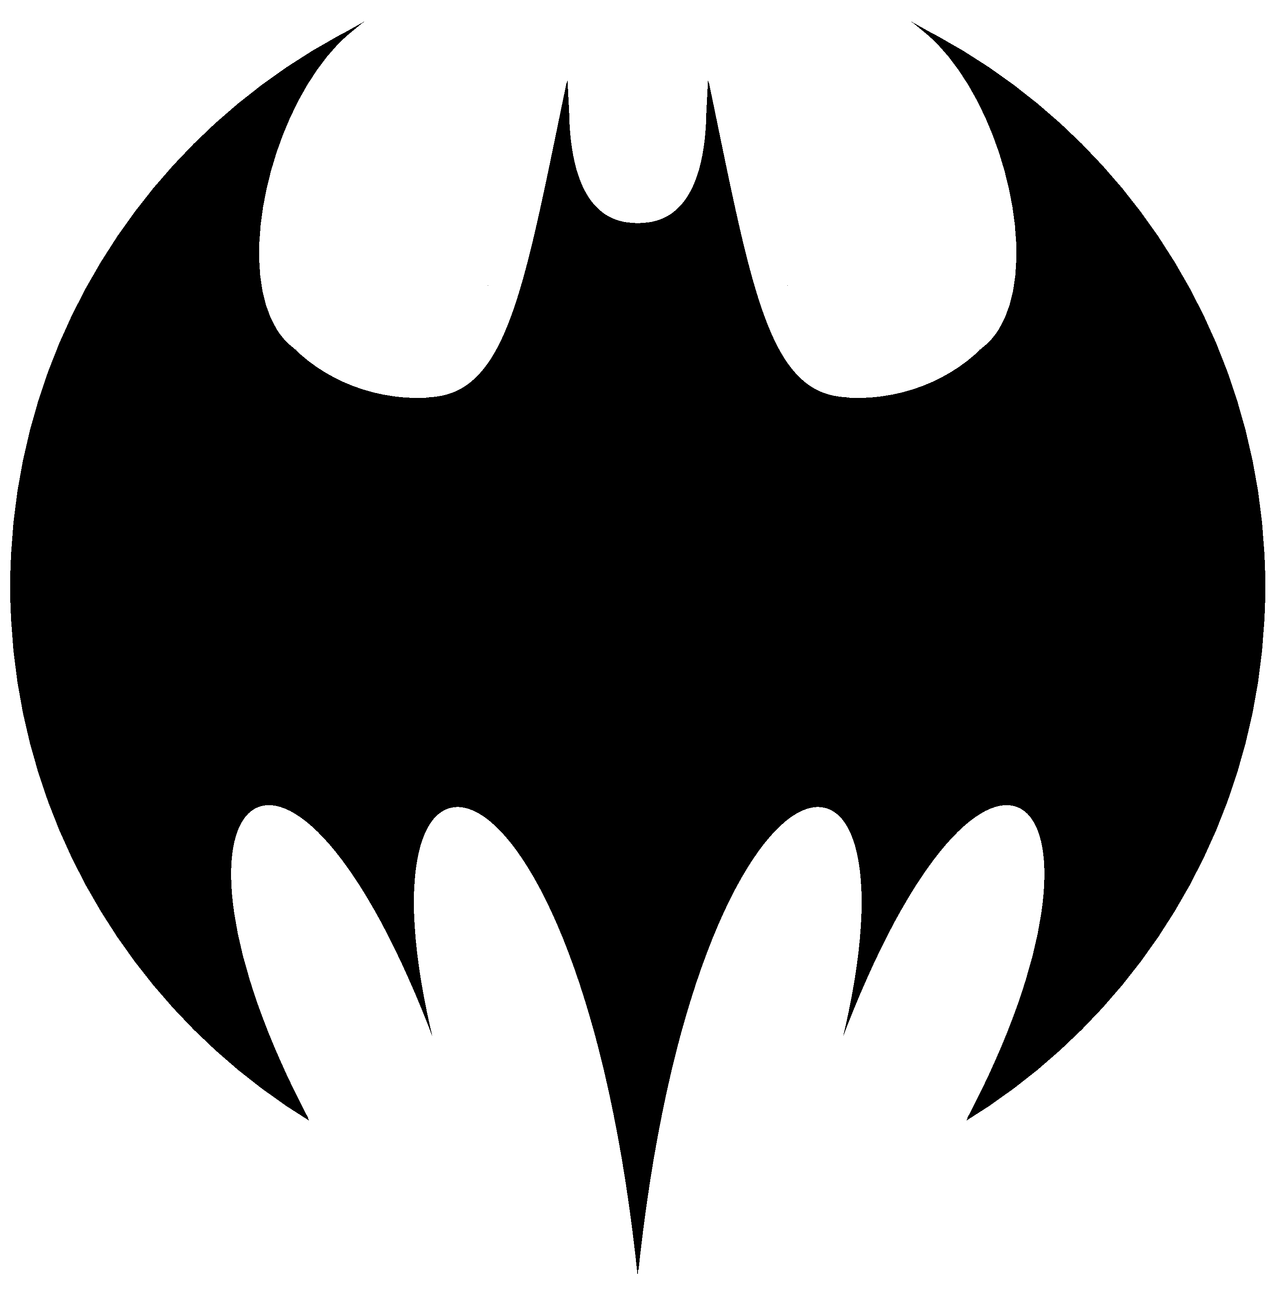 Original Batman Symbol Outline - ClipArt Best - ClipArt Best - ClipArt Best